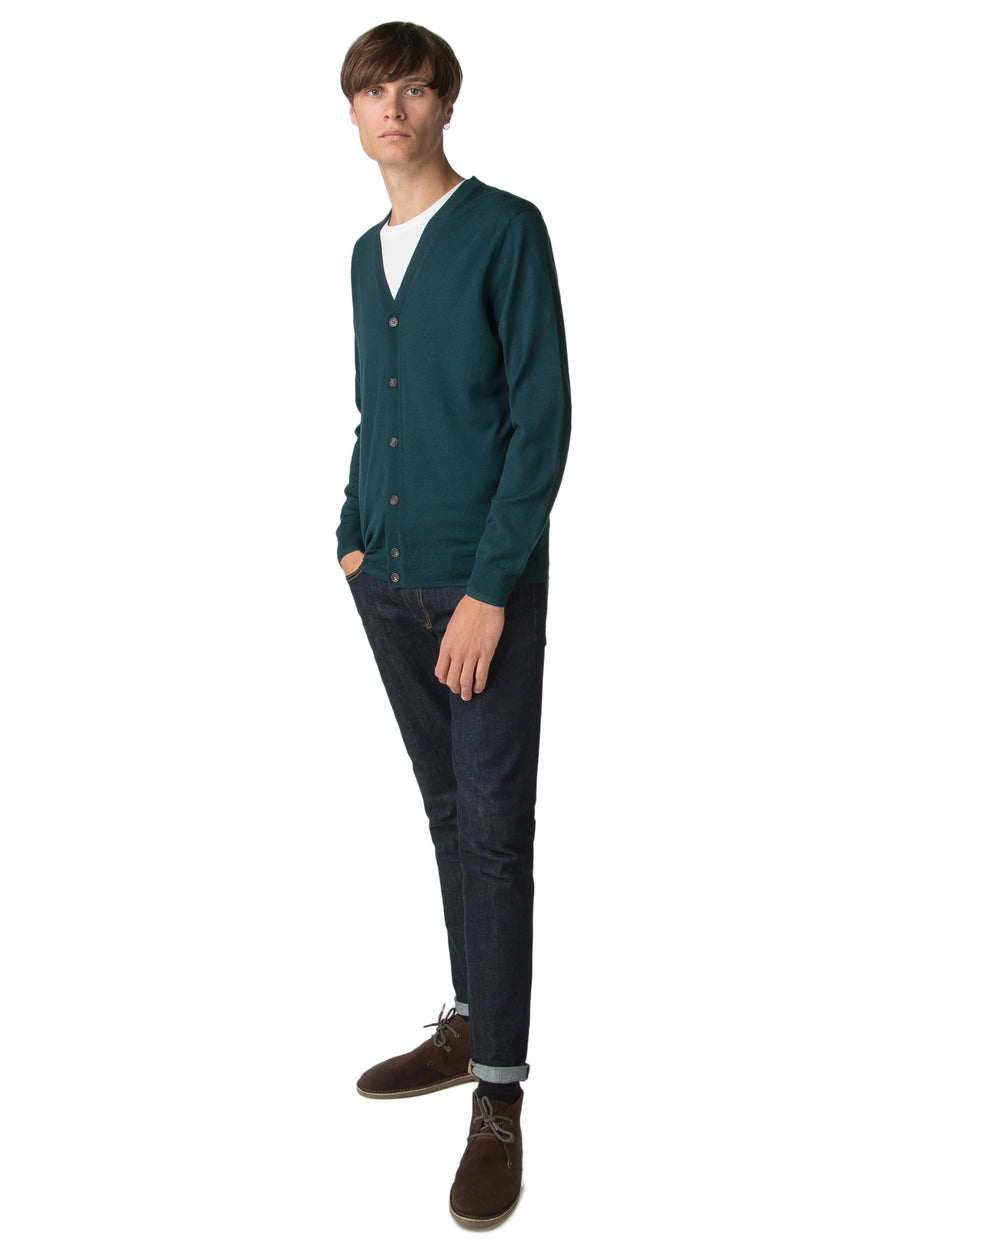 Merino Cardigan Sweater - Dark Green